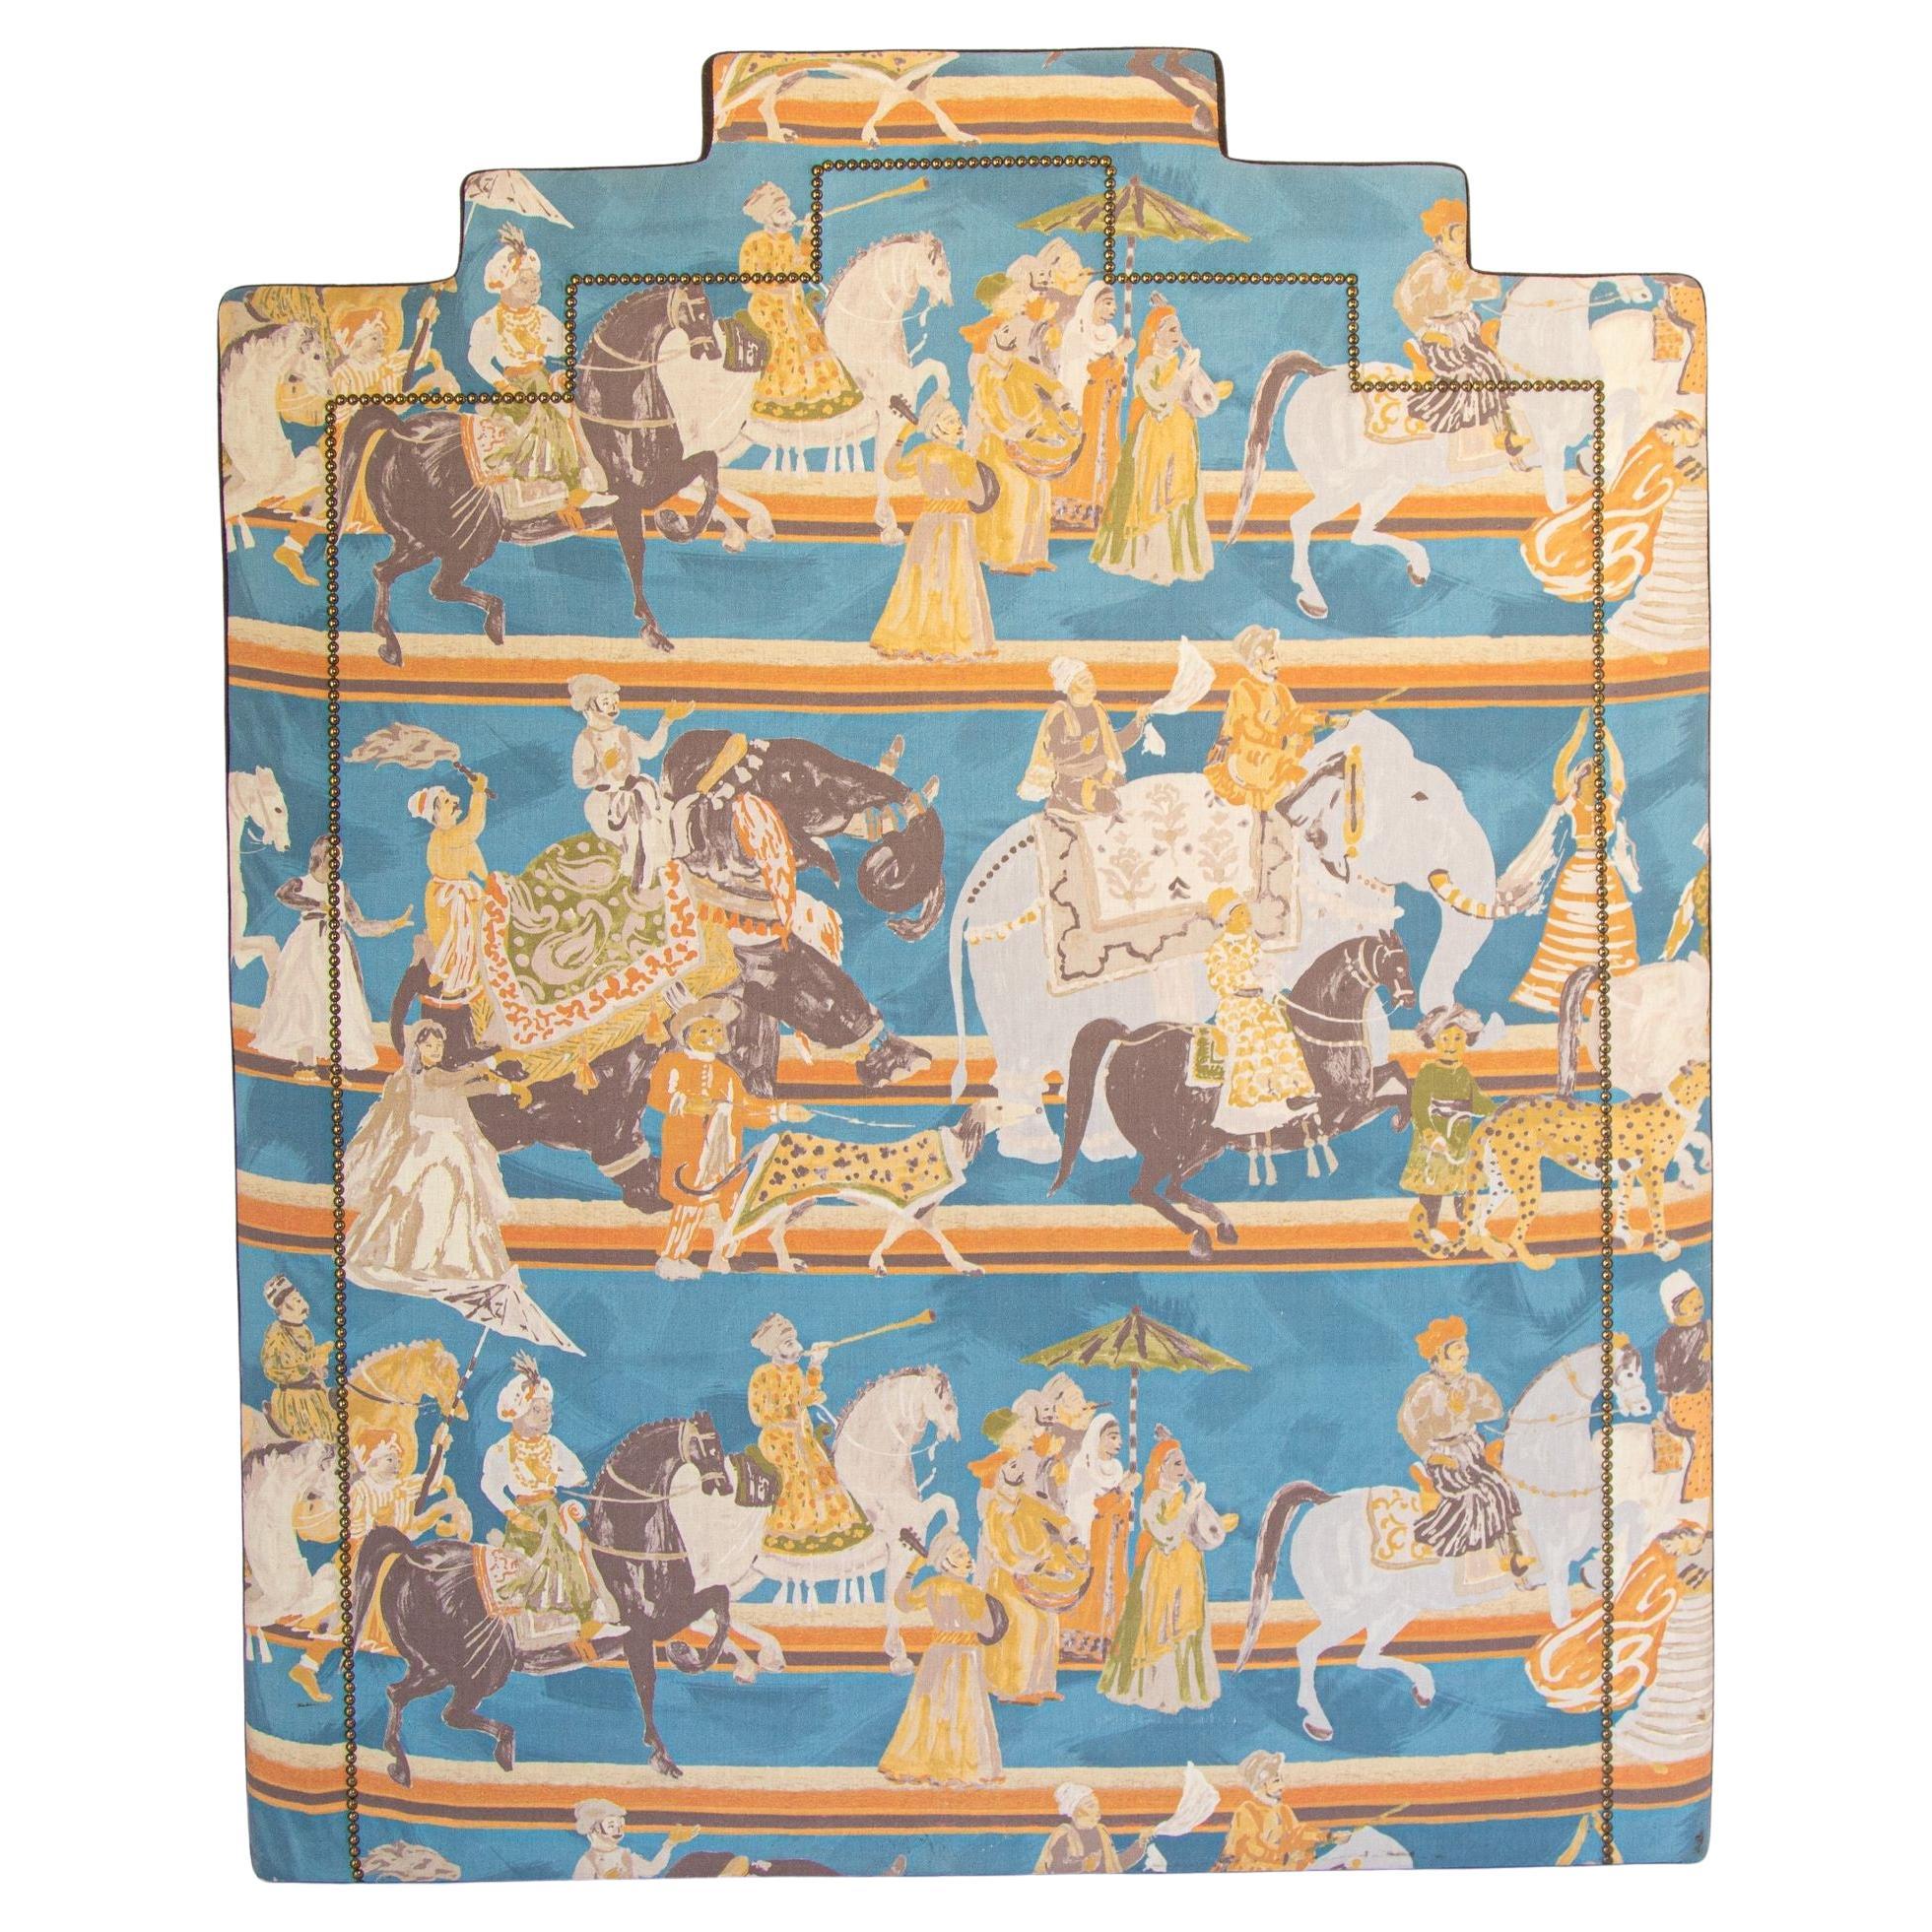 Tête de lit de luxe asiatique tapissée avec scène moghole de Maharajah sur éléphants, Inde